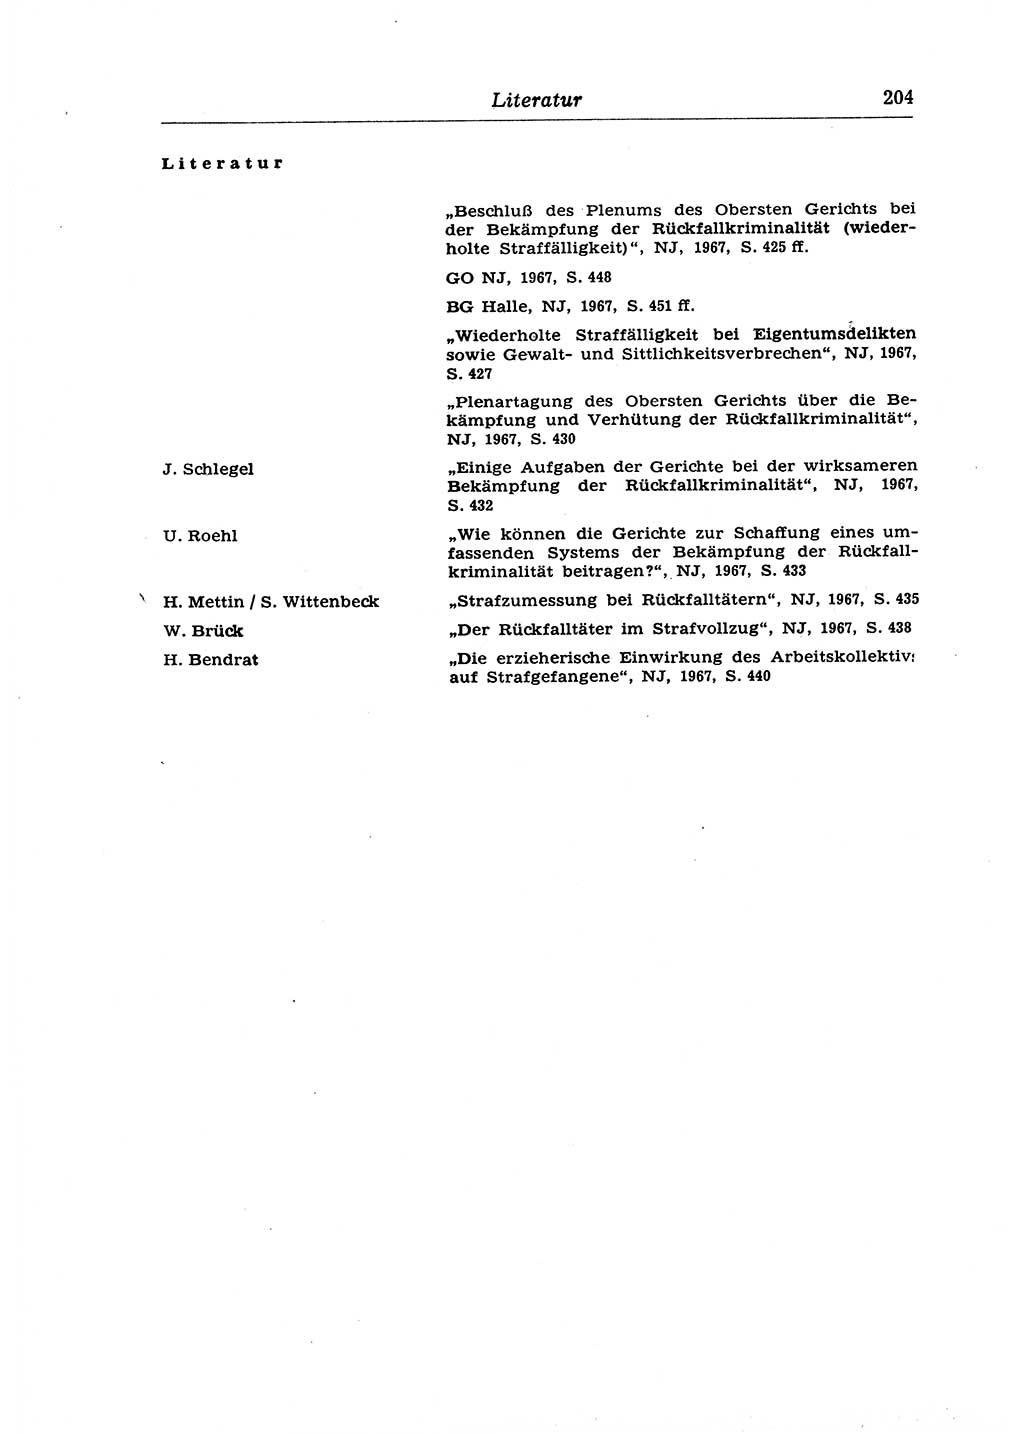 Strafrecht der Deutschen Demokratischen Republik (DDR), Lehrkommentar zum Strafgesetzbuch (StGB), Allgemeiner Teil 1970, Seite 204 (Strafr. DDR Lehrkomm. StGB AT 1970, S. 204)